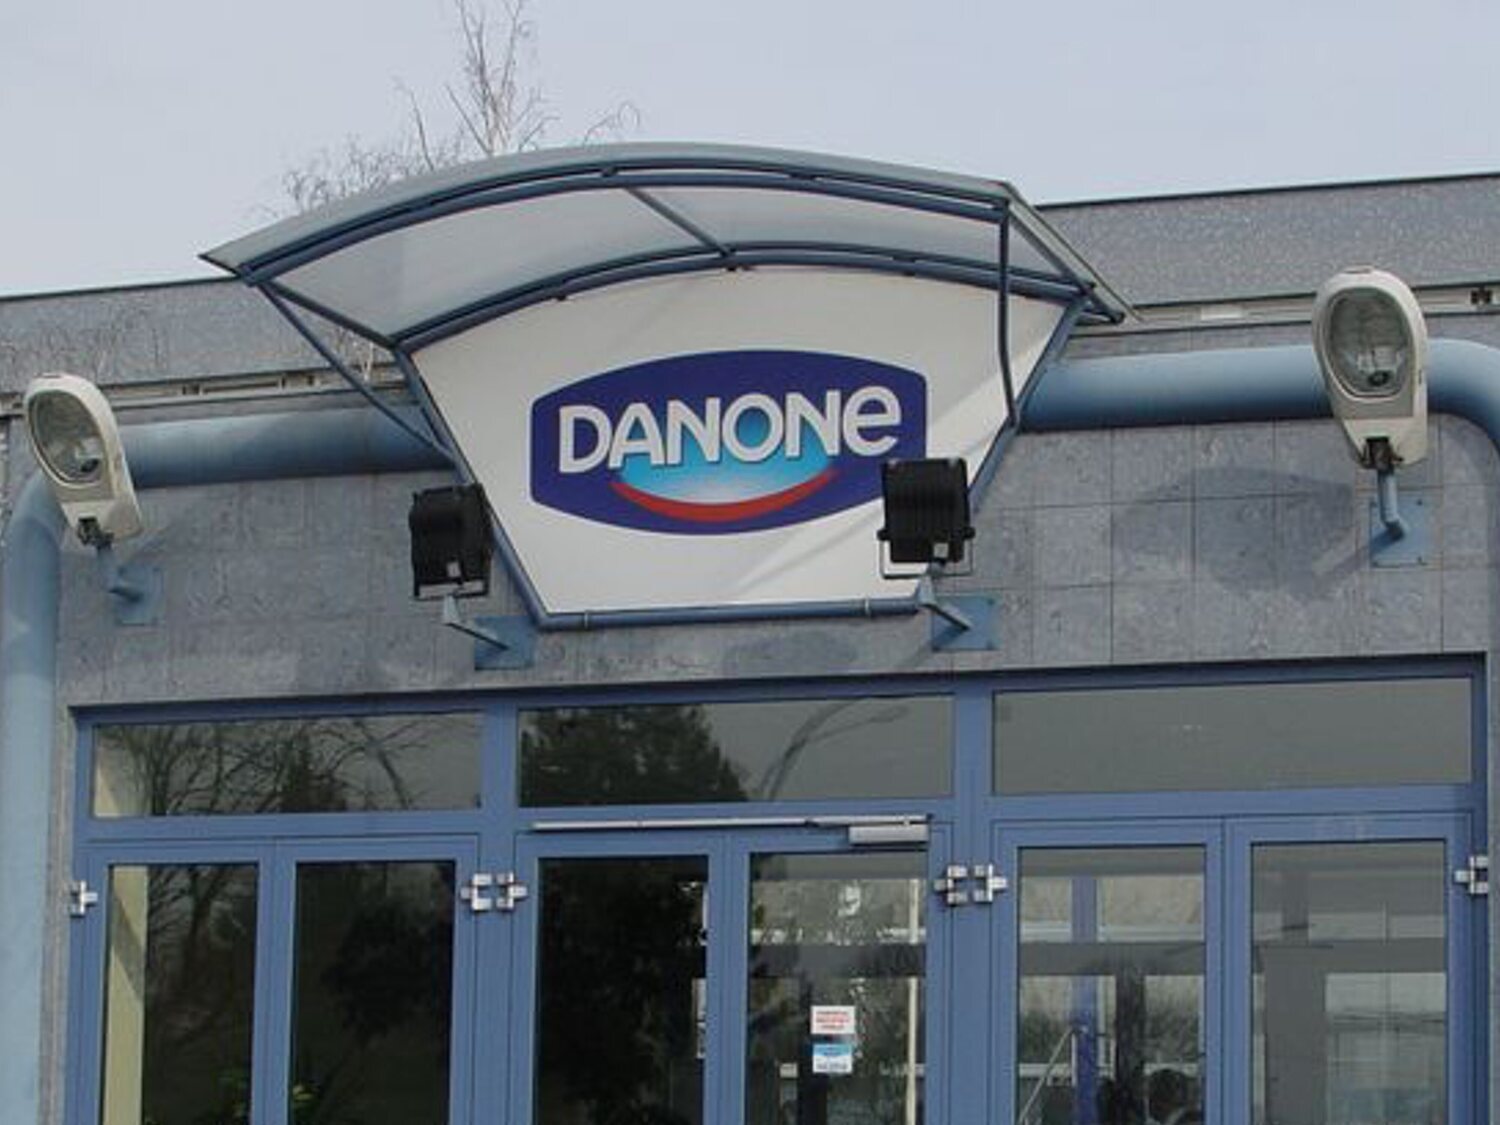 Sueldos de 2.500 euros y contrato indefinido: Danone lanza ofertas de empleo en España